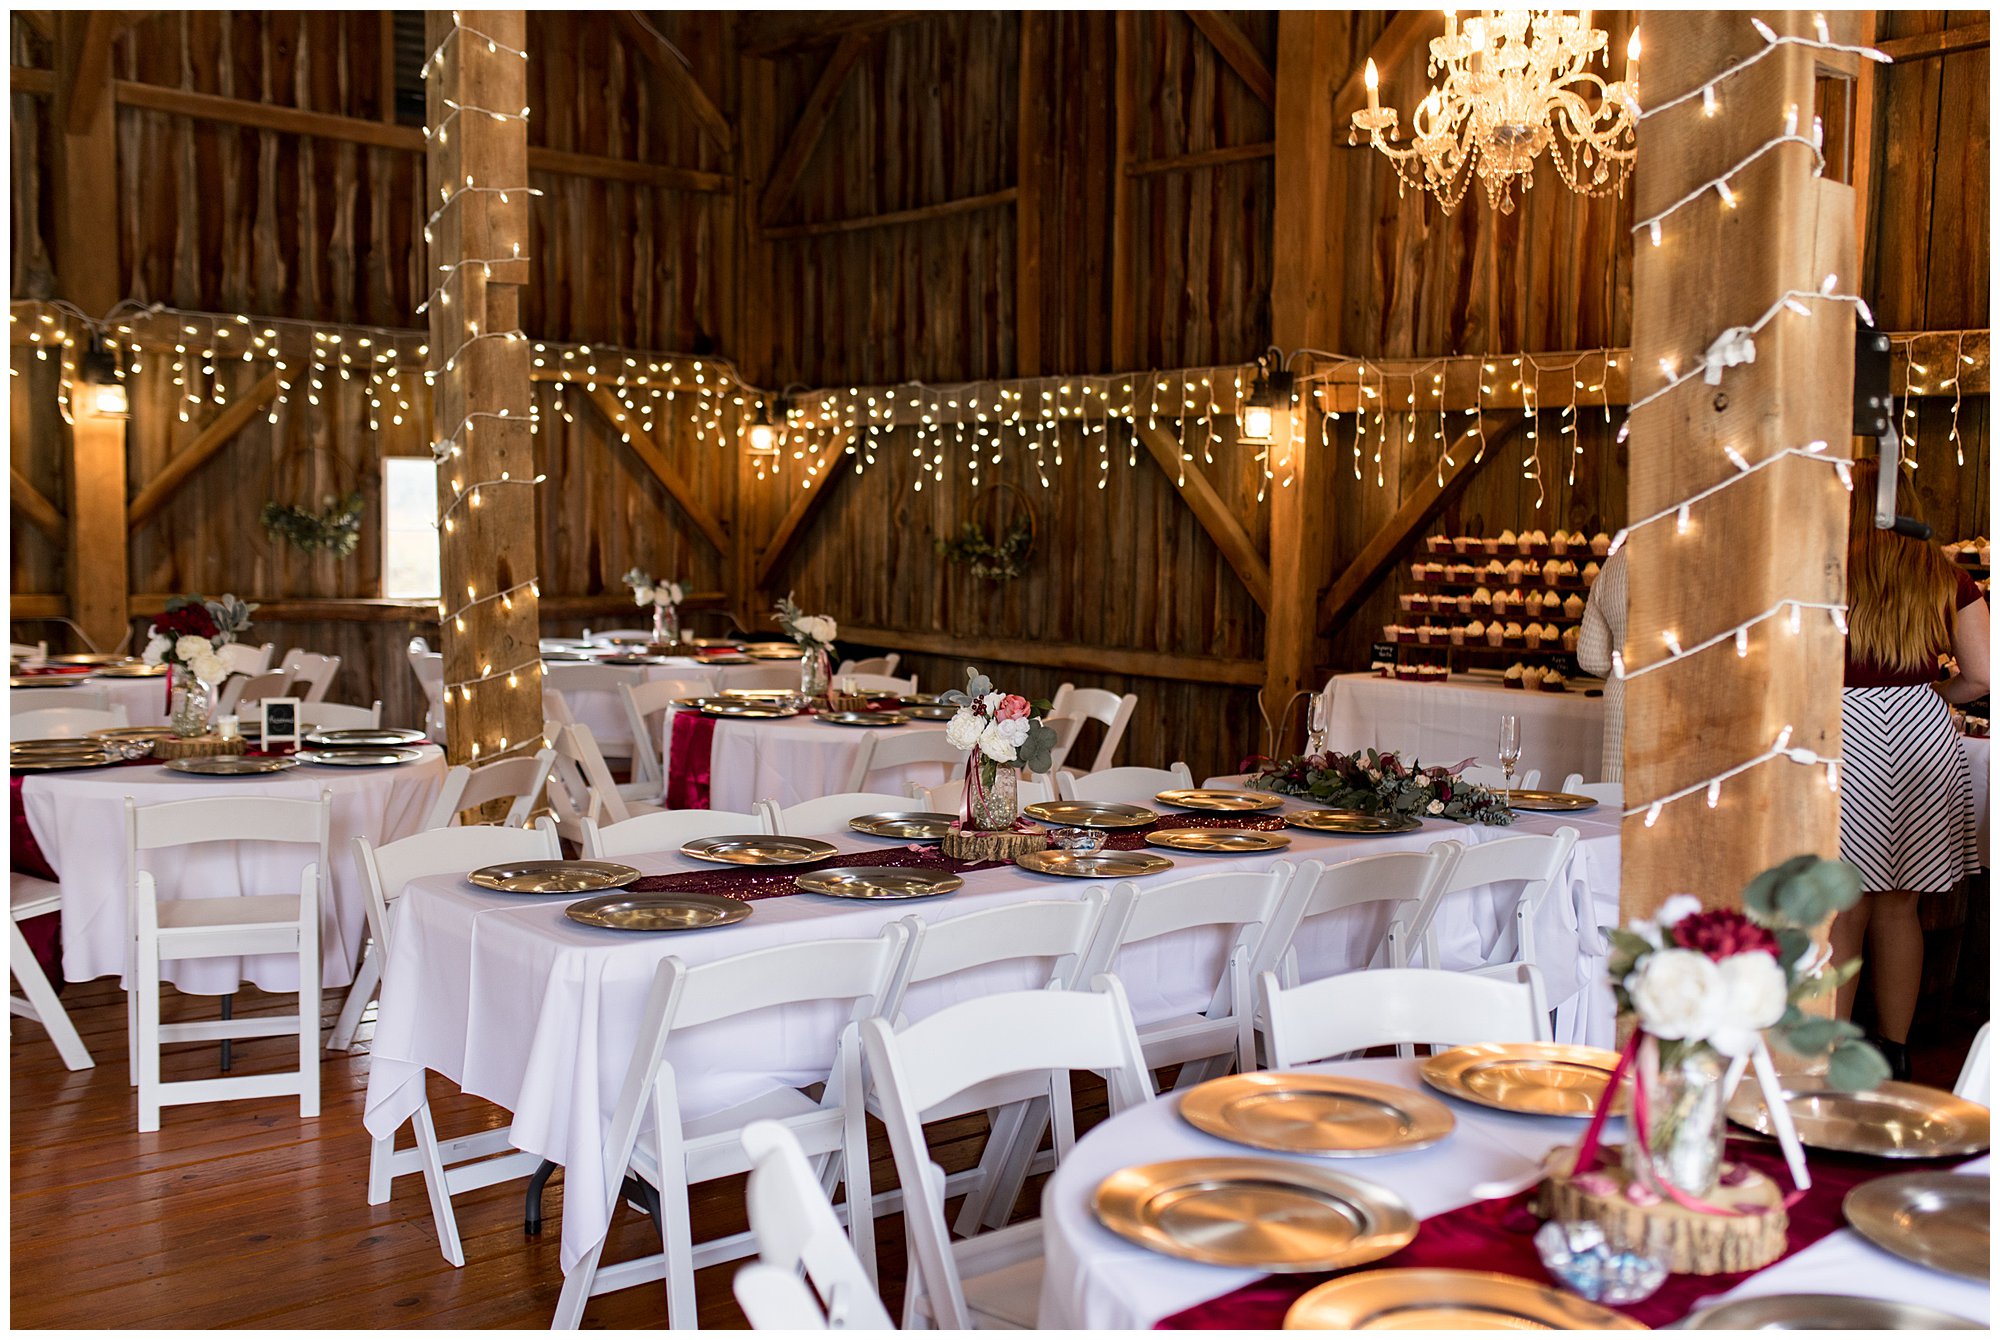 Legacy Barn wedding reception decor for gorgeous fall wedding